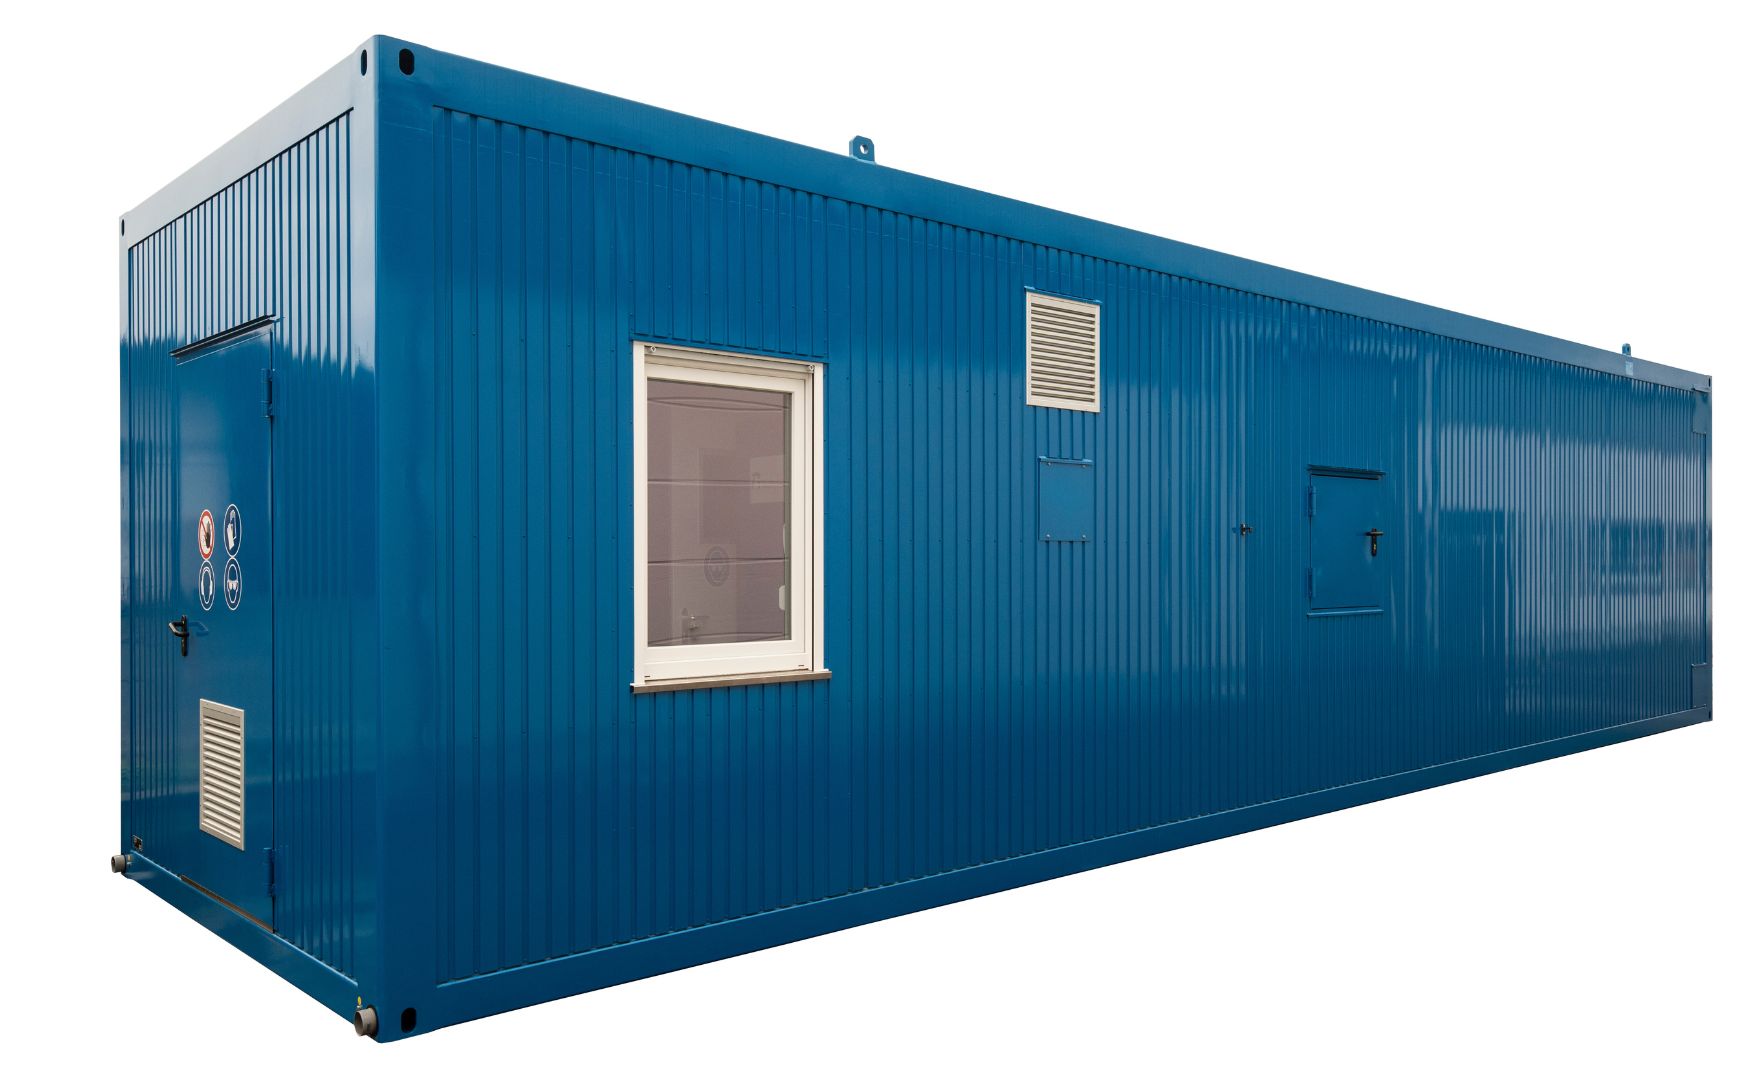 Spezieller Technikraumcontainer ALMA MODUL in dem Anlagen zur Prozesswasser- und Abwasseraufbereitung gebaut werden